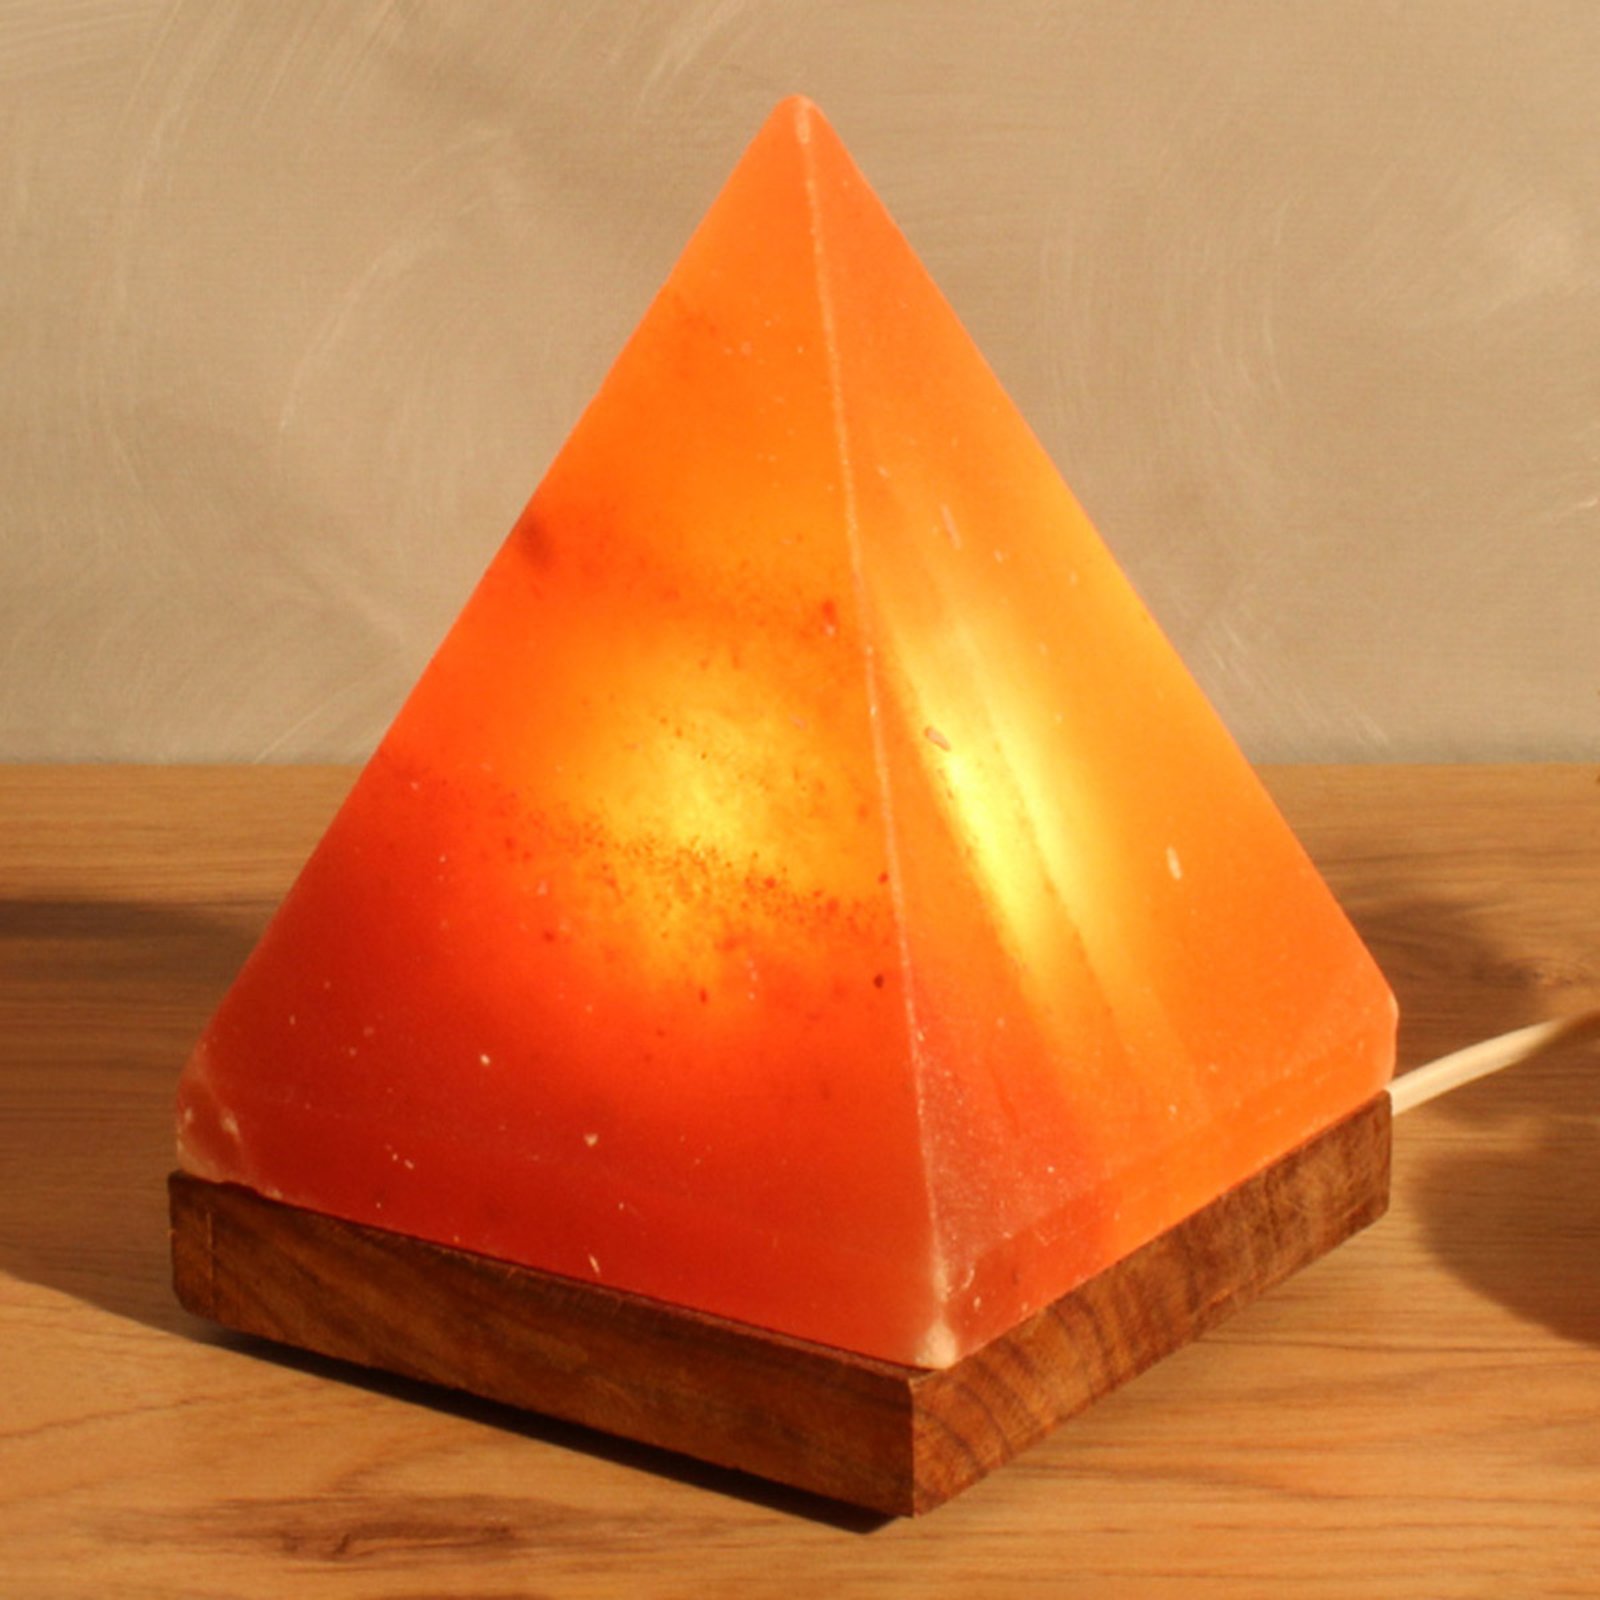 Saltlampa Pyramid med sockel, bärnsten